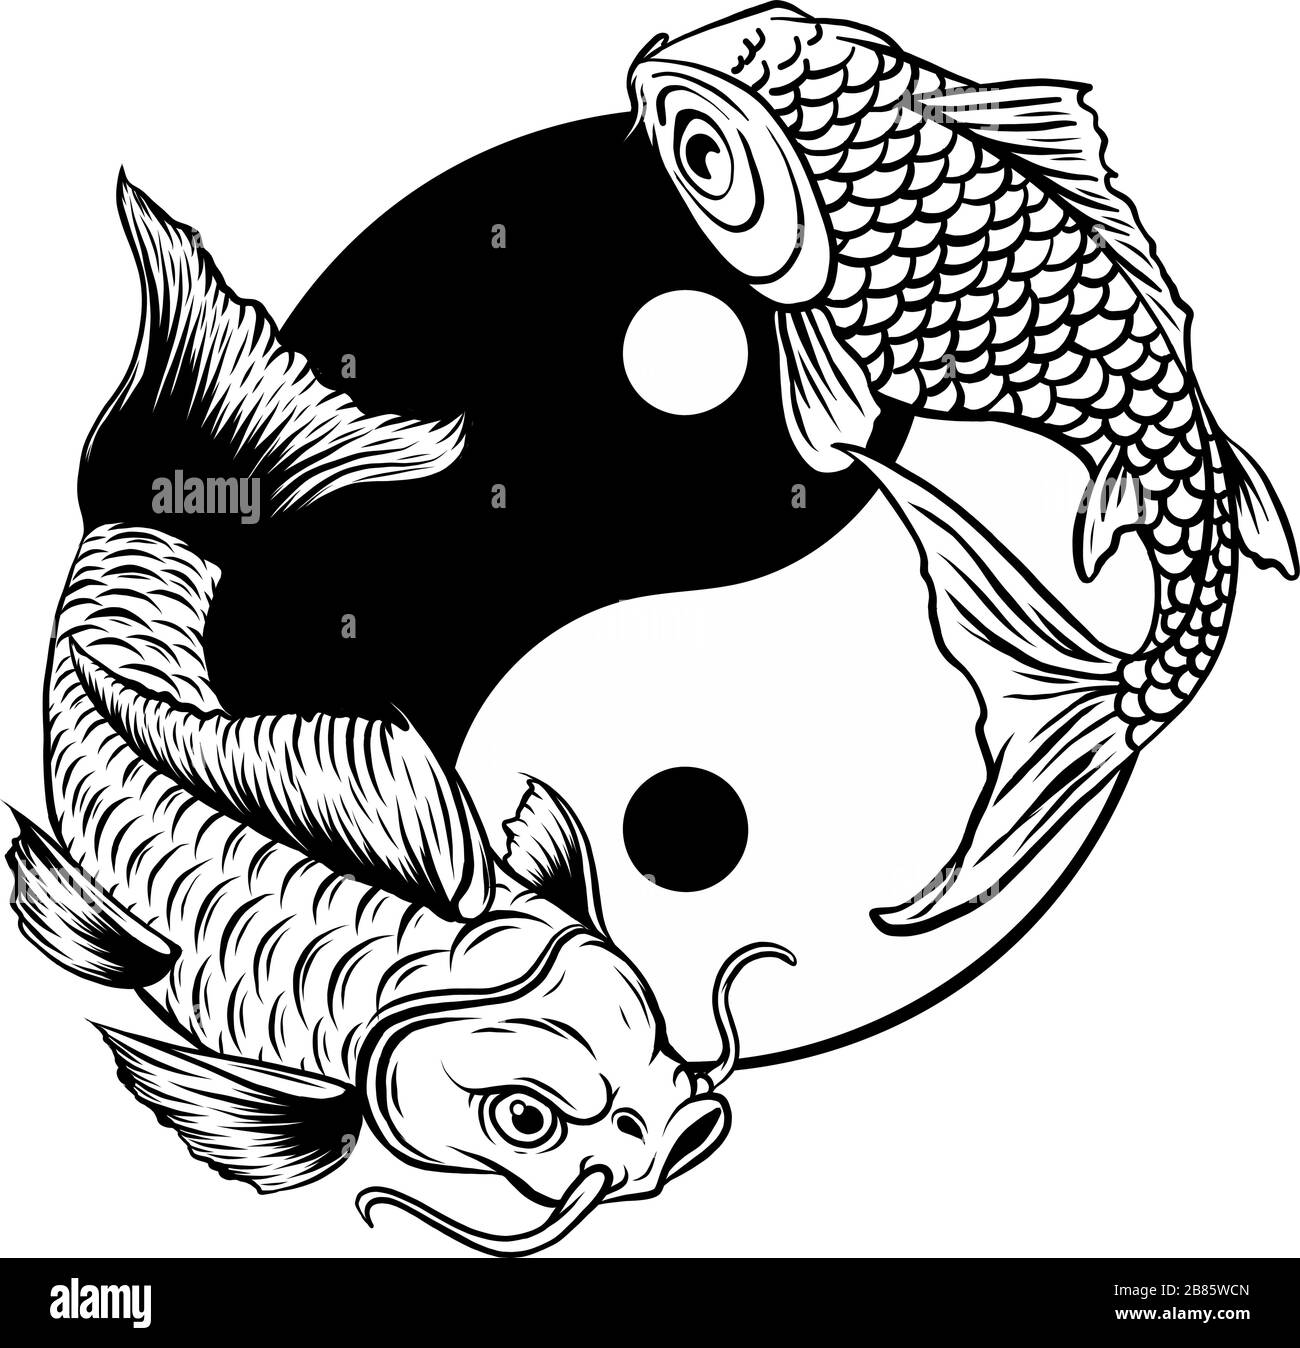 Yin Yang Koi Fisch-Vektorgrafikkunst Stock Vektor